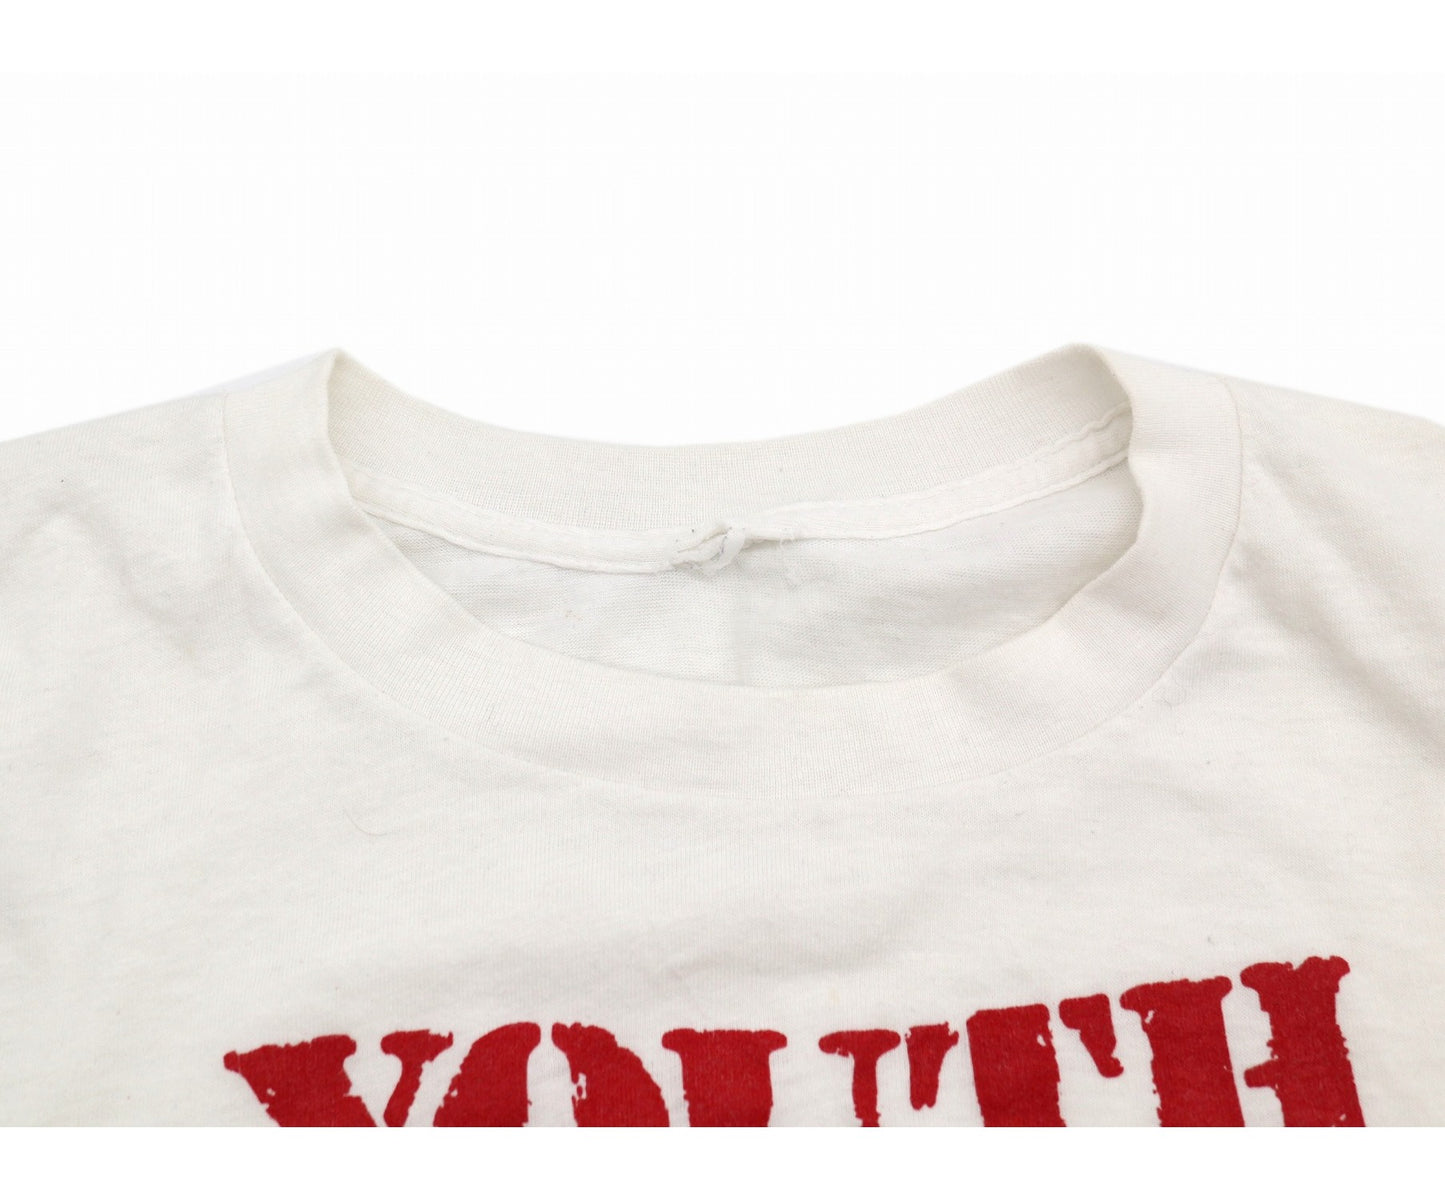 [빈티지 옷] 80 년대 오늘날의 청소년 오늘 밴드 티셔츠